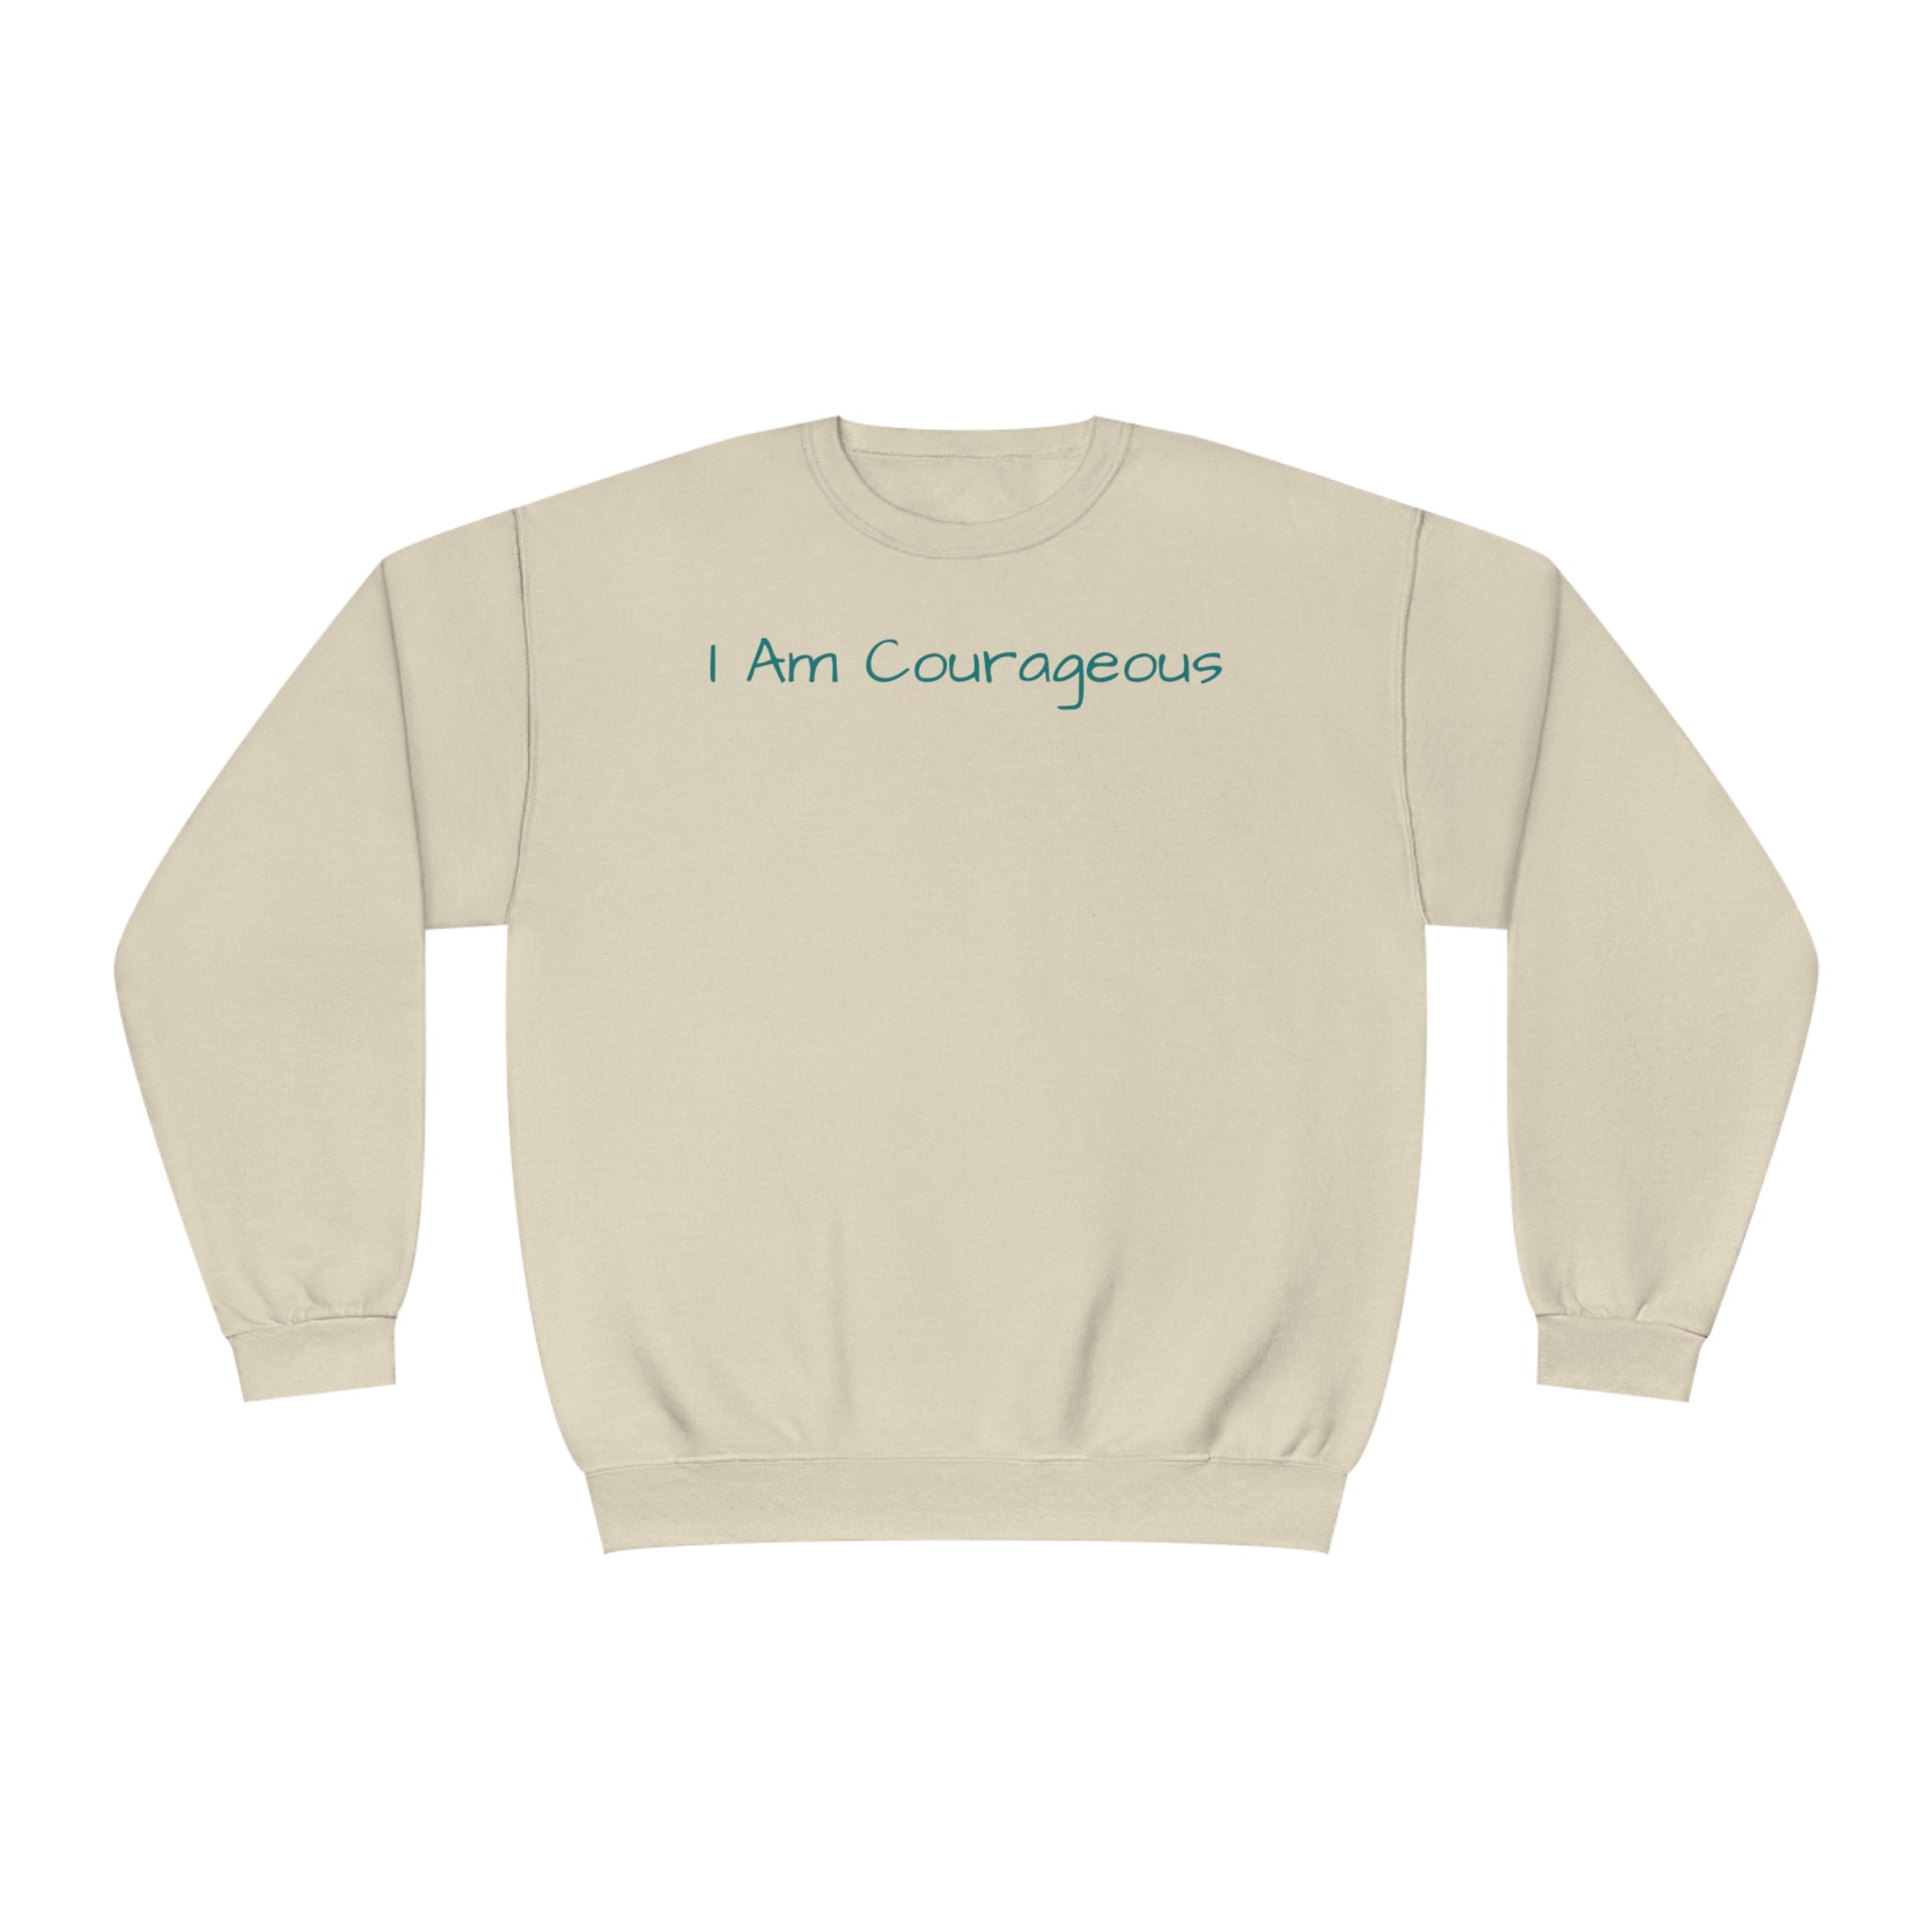 I Am Courageous Fleece: Comfort & Empowerment Sandstone Comfy Sweater Cozy Sweatshirt Crewneck Sweatshirt Fleece Pullover Graphic Sweatshirt Men's Sweatshirt Streatwear Sweatshirt Warm Outerwear Women's Sweatshirt Sweatshirt 6466671868410175300_2048 Printify